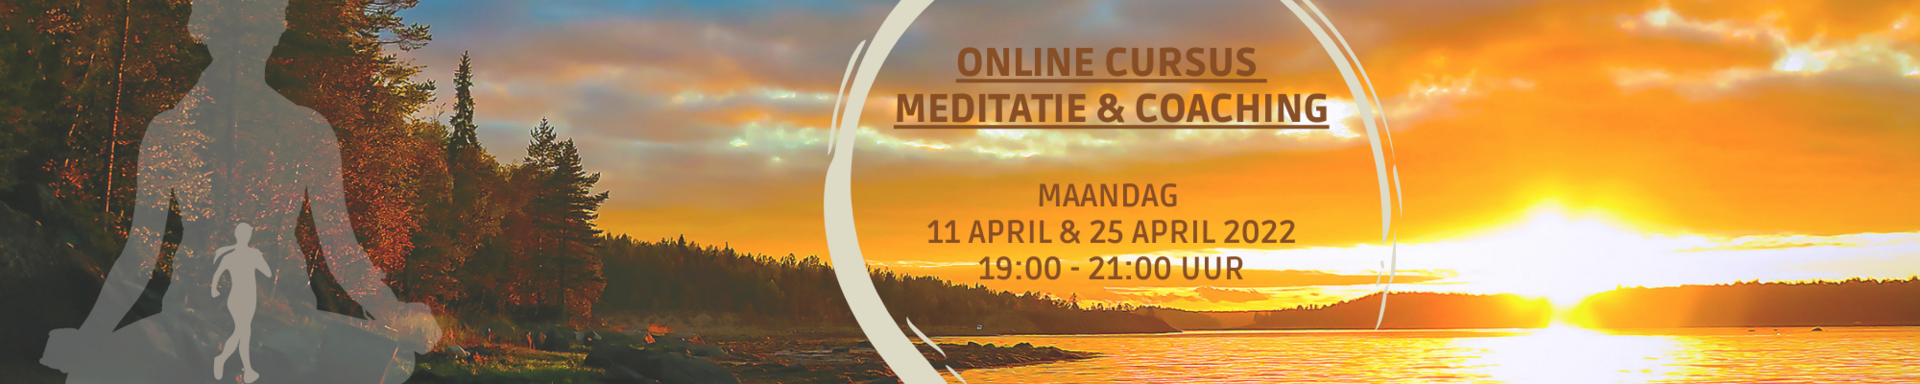 Online Cursus Meditatie & Coaching